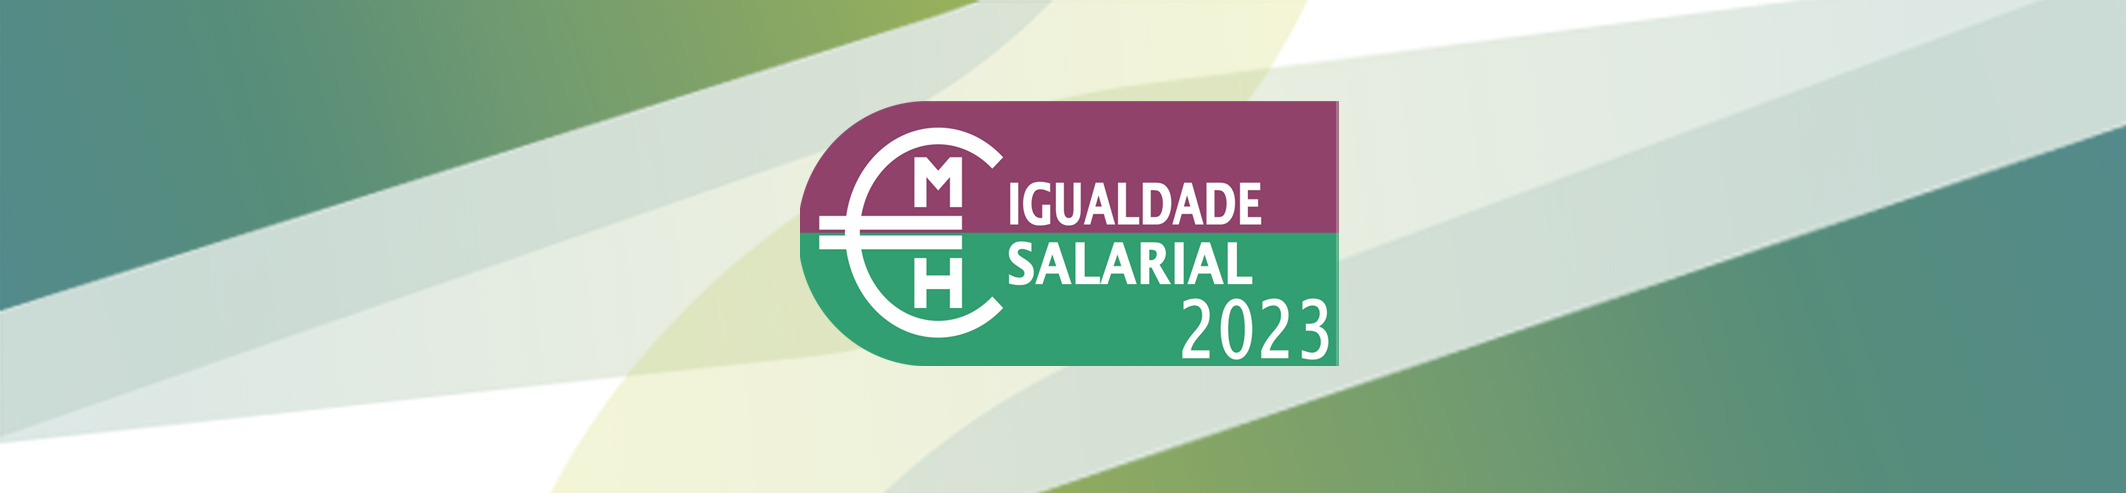 Locarent distinguida com o “Selo da Igualdade Salarial” 2023